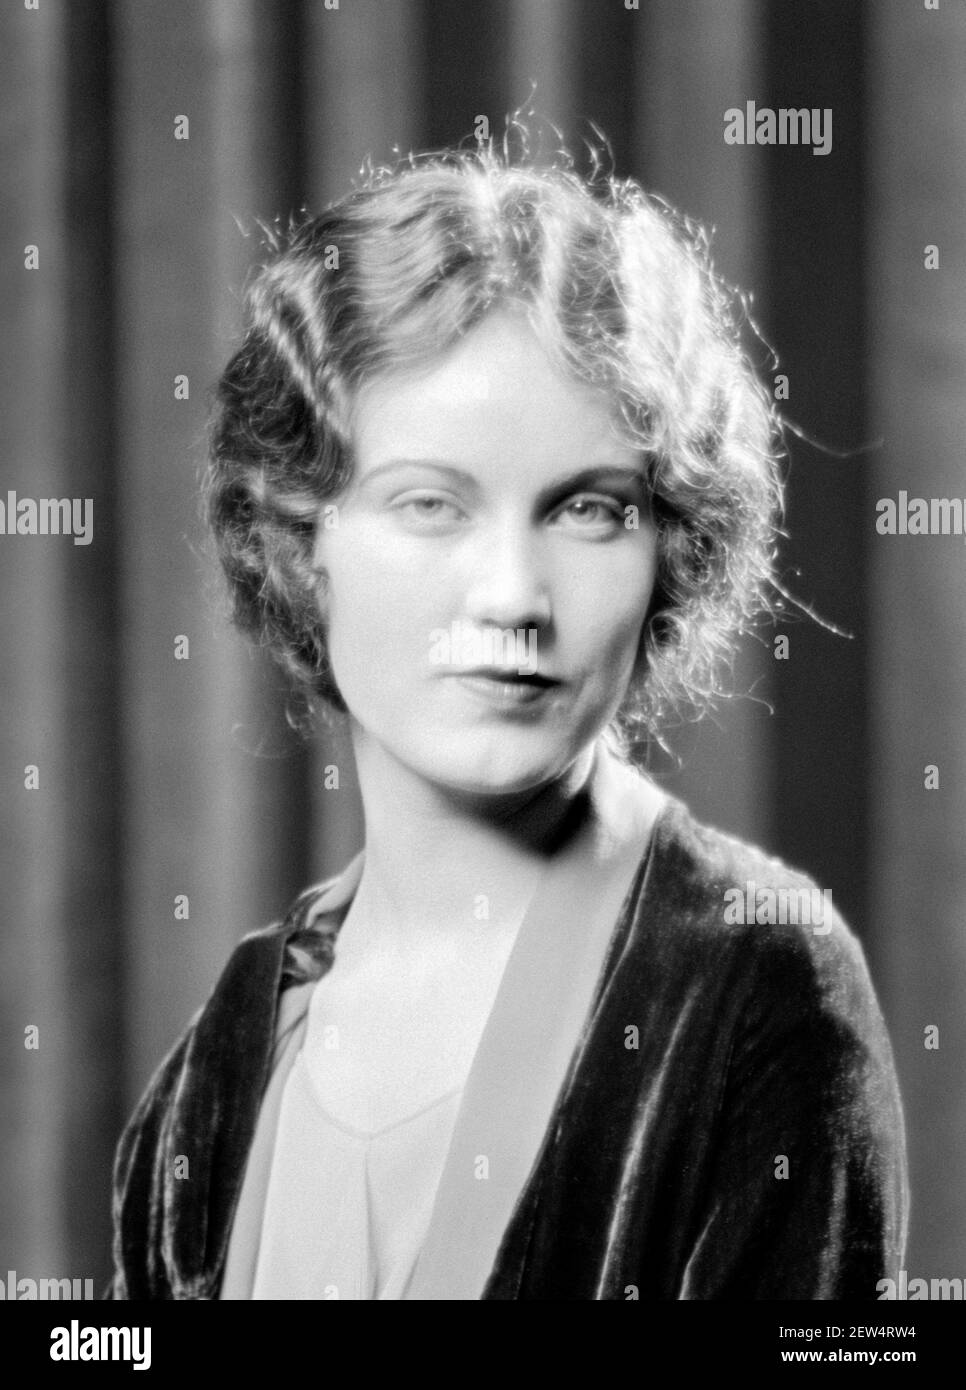 Fay Wray. Ritratto dell'attrice canadese-americana, Vina Fay Wray (1907-2004), di Arnold Genthe, 1927. Wray è più famosa per il suo ruolo nel film del 1933 "King Kong" Foto Stock